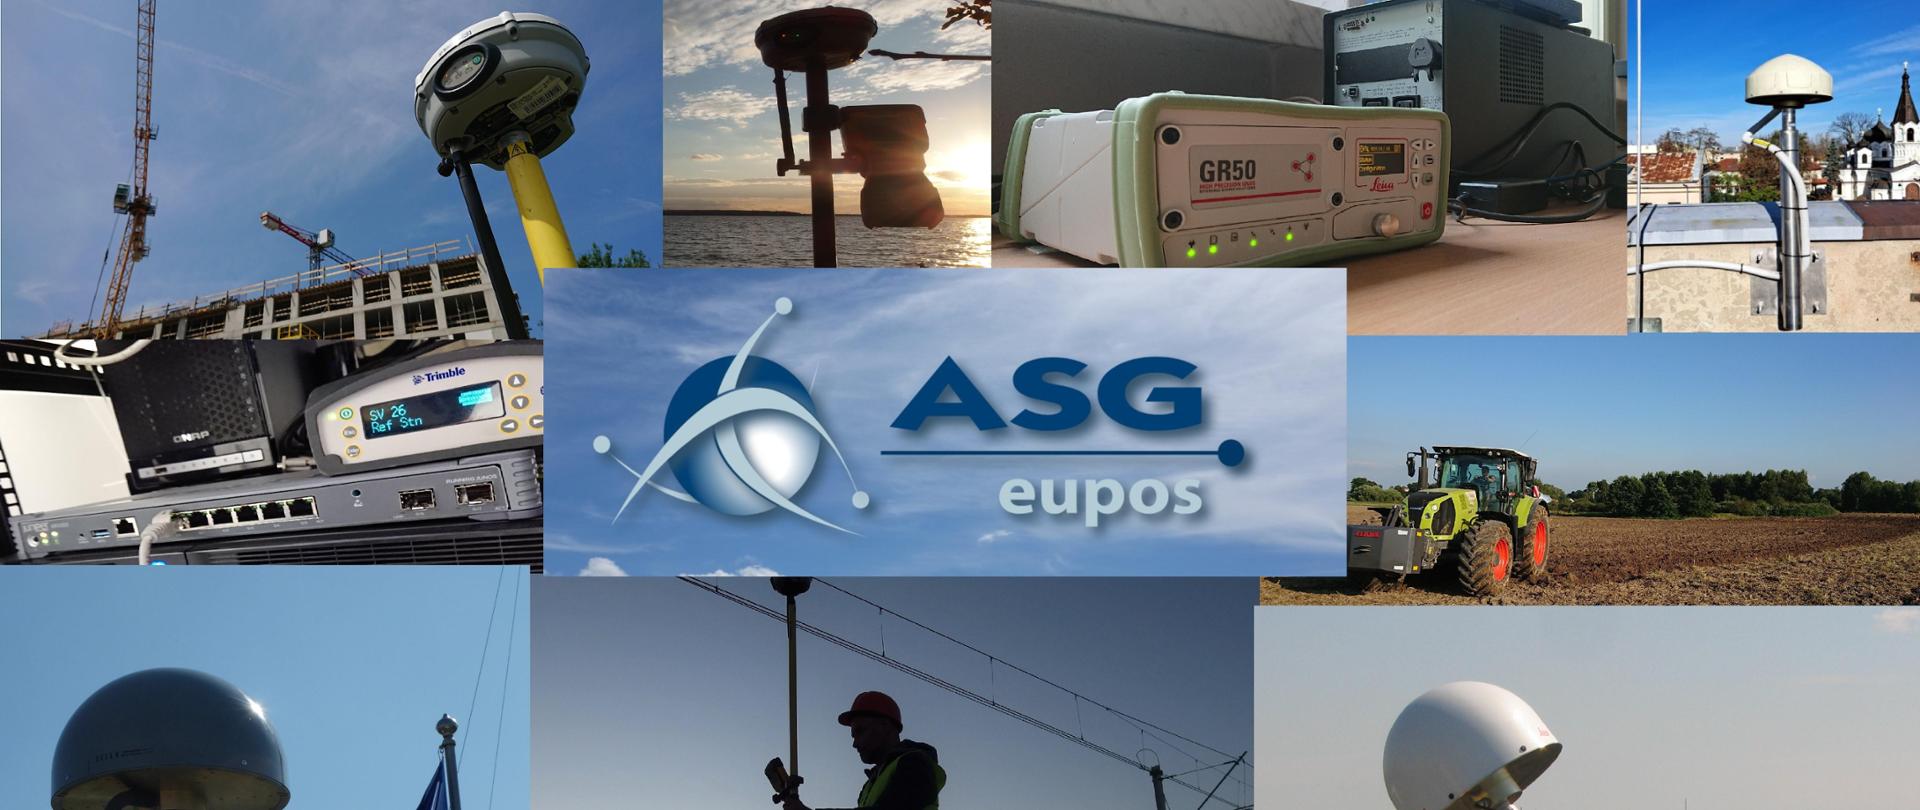 Ilustracja prezentująca anteny GNSS oraz wykorzystanie systemu ASG-EUPOS